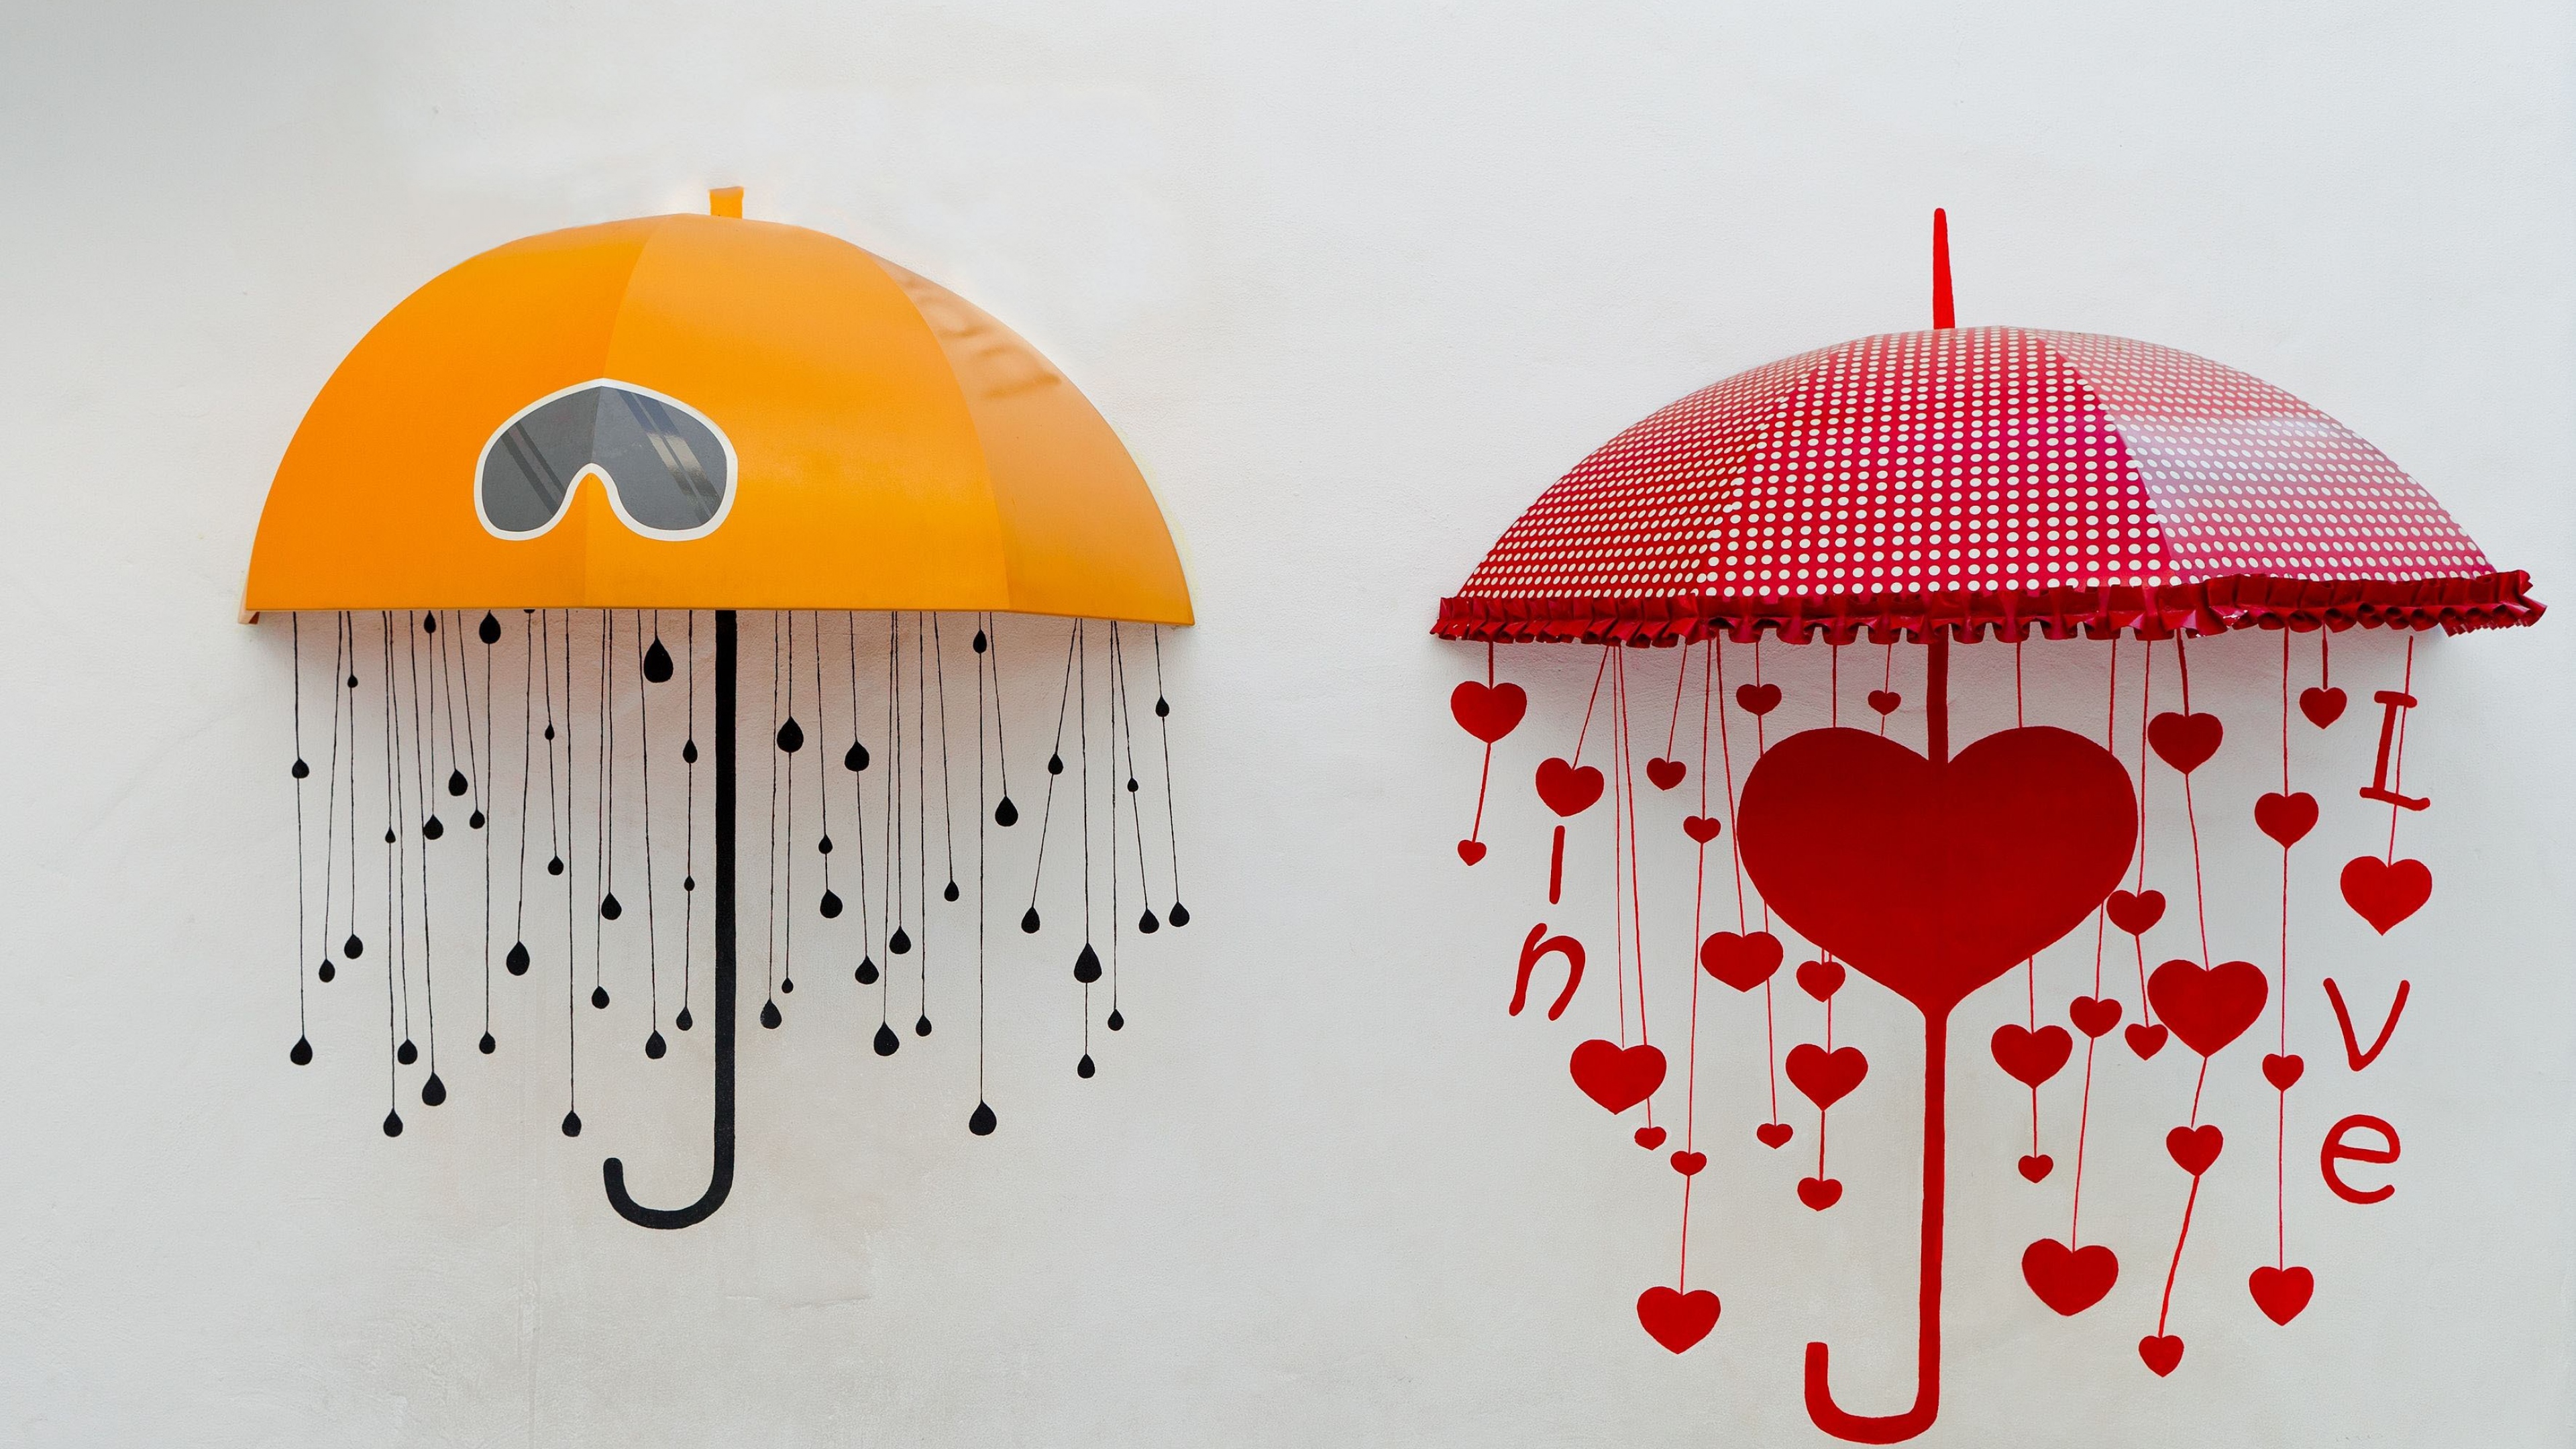 Фото чертеж слышать зонтик - бесплатные картинки на Fonwall